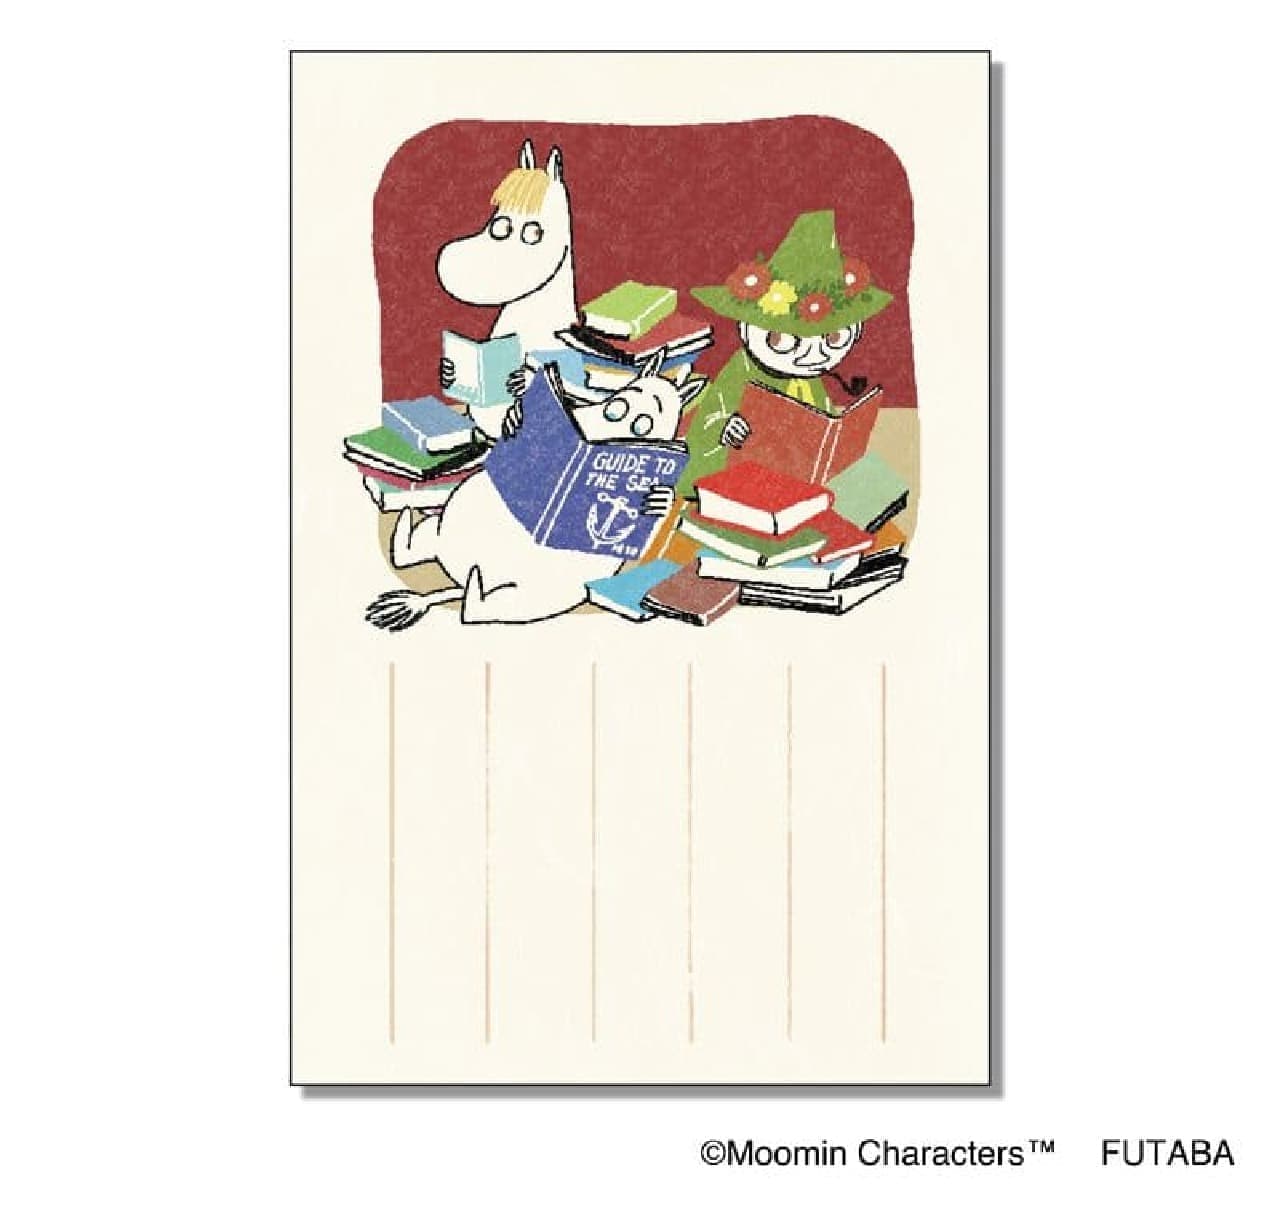 Post Office "Moomin Seasonal Iyo Washi Goods Autumn